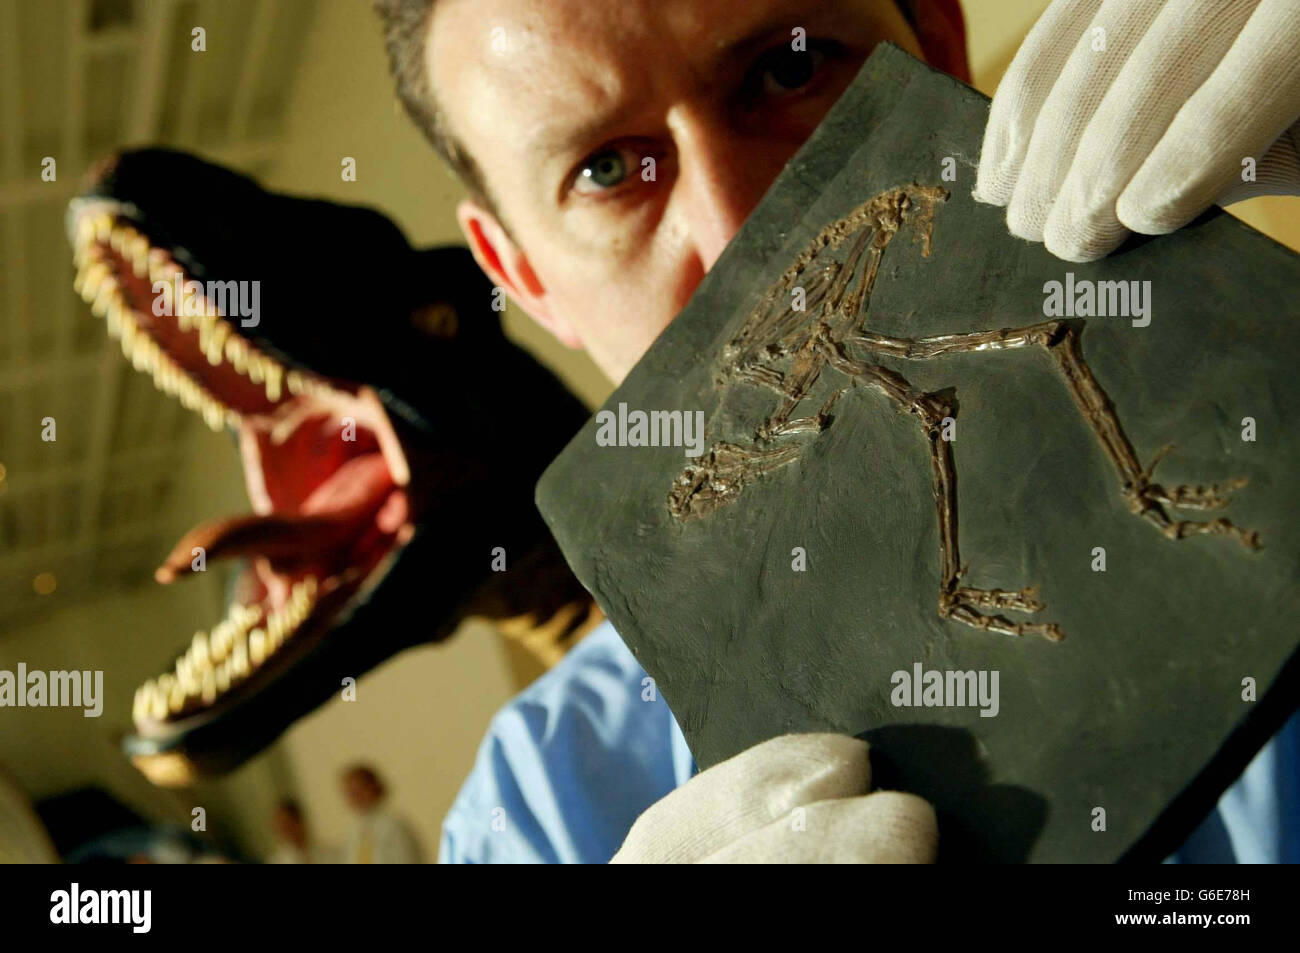 Ein Zoologe hält das 50 Millionen Jahre alte Messelornis Cristata Fossil während der ersten Ausstellung des Dino-Vogels: Gefiederte Fossilien aus China im Royal Museum, Edinburgh. Unter den Exponaten befand sich ein 124 Millionen Jahre altes Fossil, *.., das sich als das fehlende Bindeglied zwischen fleischfressenden Dinosauriern und Vögeln erwies. Die federgesäumten Überreste von dem, was als Fuzzy Raptor bezeichnet wird, wurden vor drei Jahren von lokalen Bauern in der Provinz Laioning im Nordosten Chinas entdeckt. Stockfoto